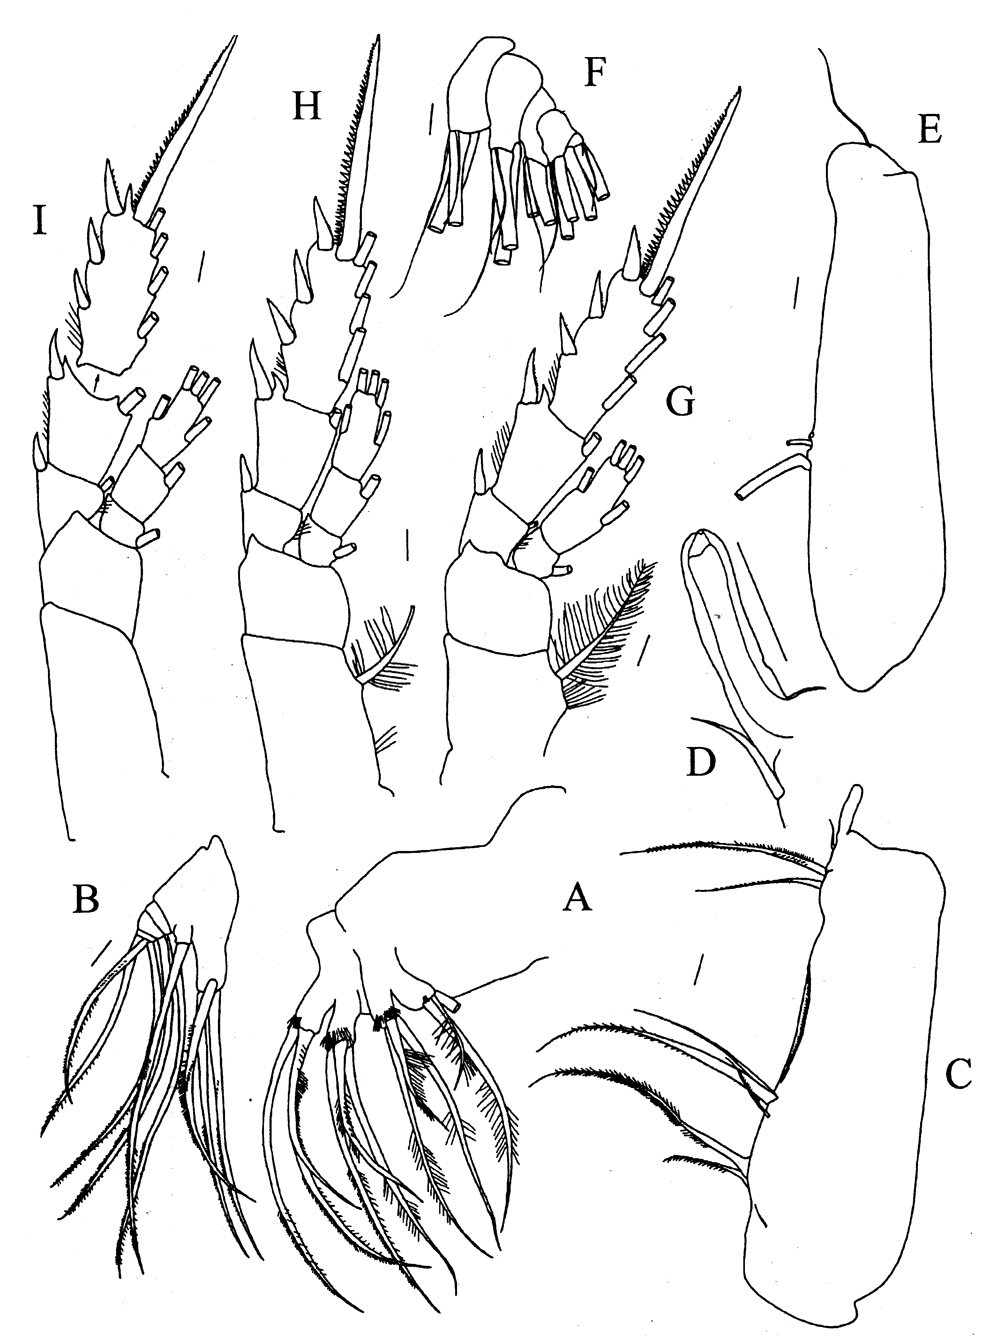 Species Pseudeuchaeta acuticornis - Plate 3 of morphological figures